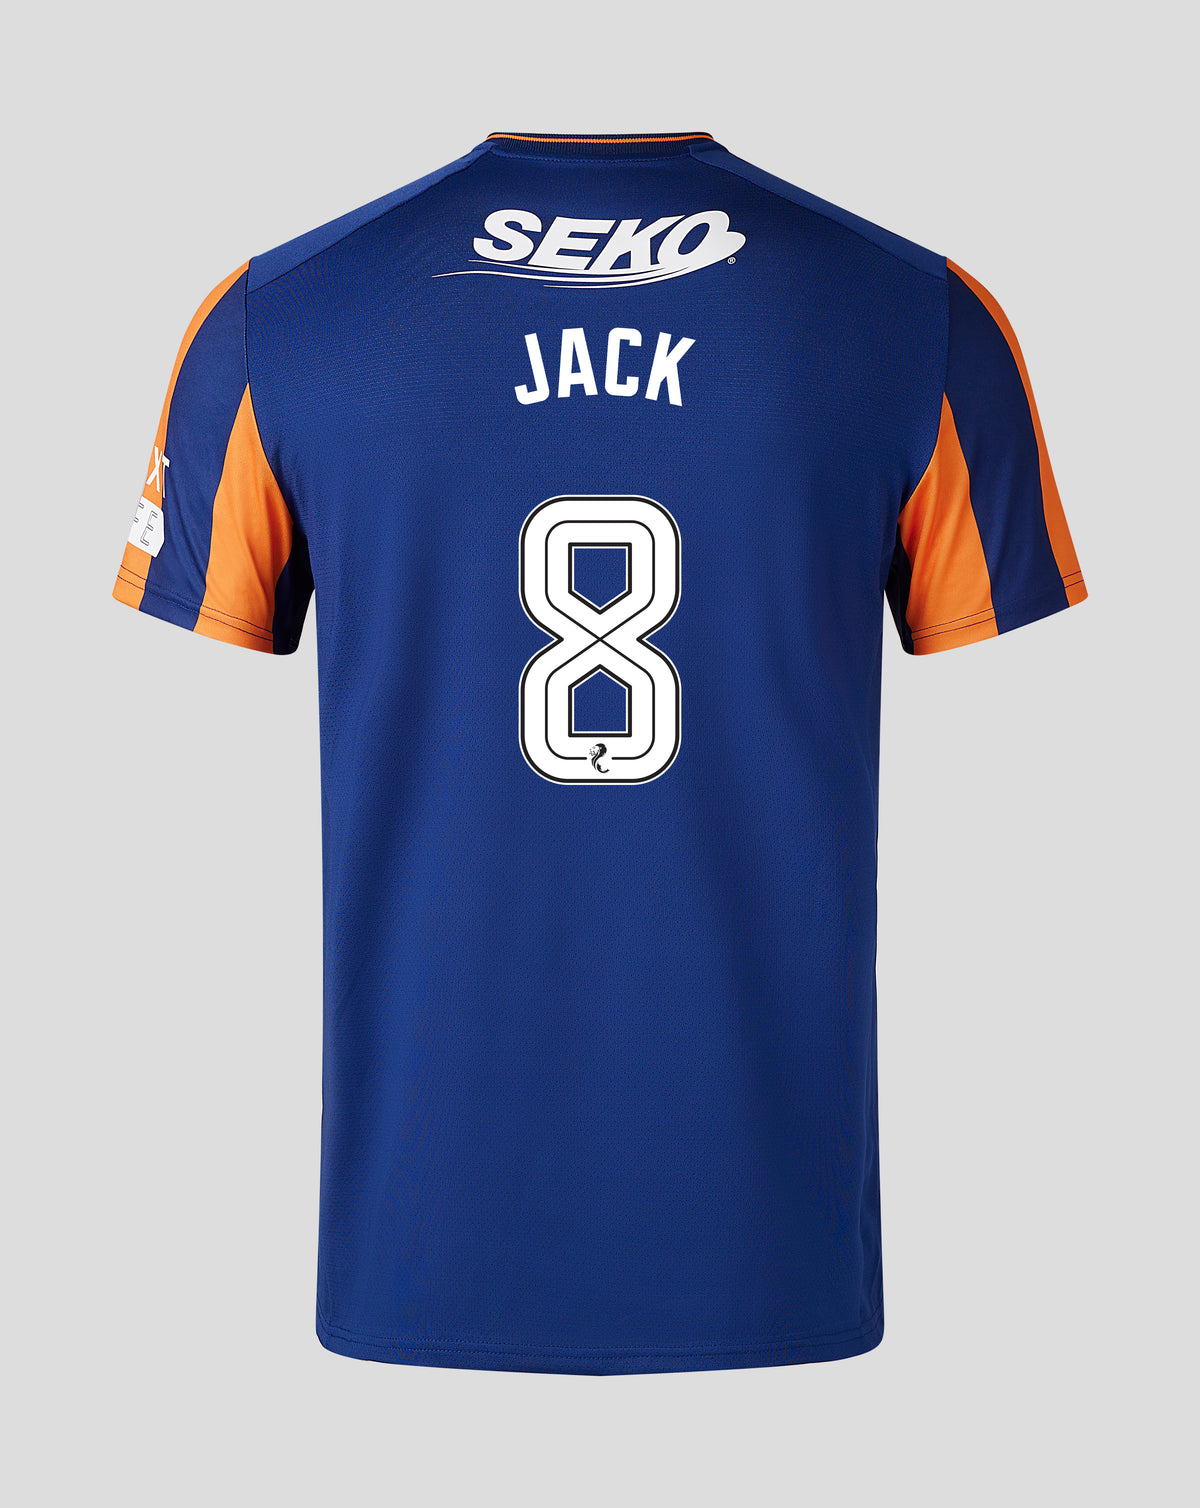 Jack - Third Kit